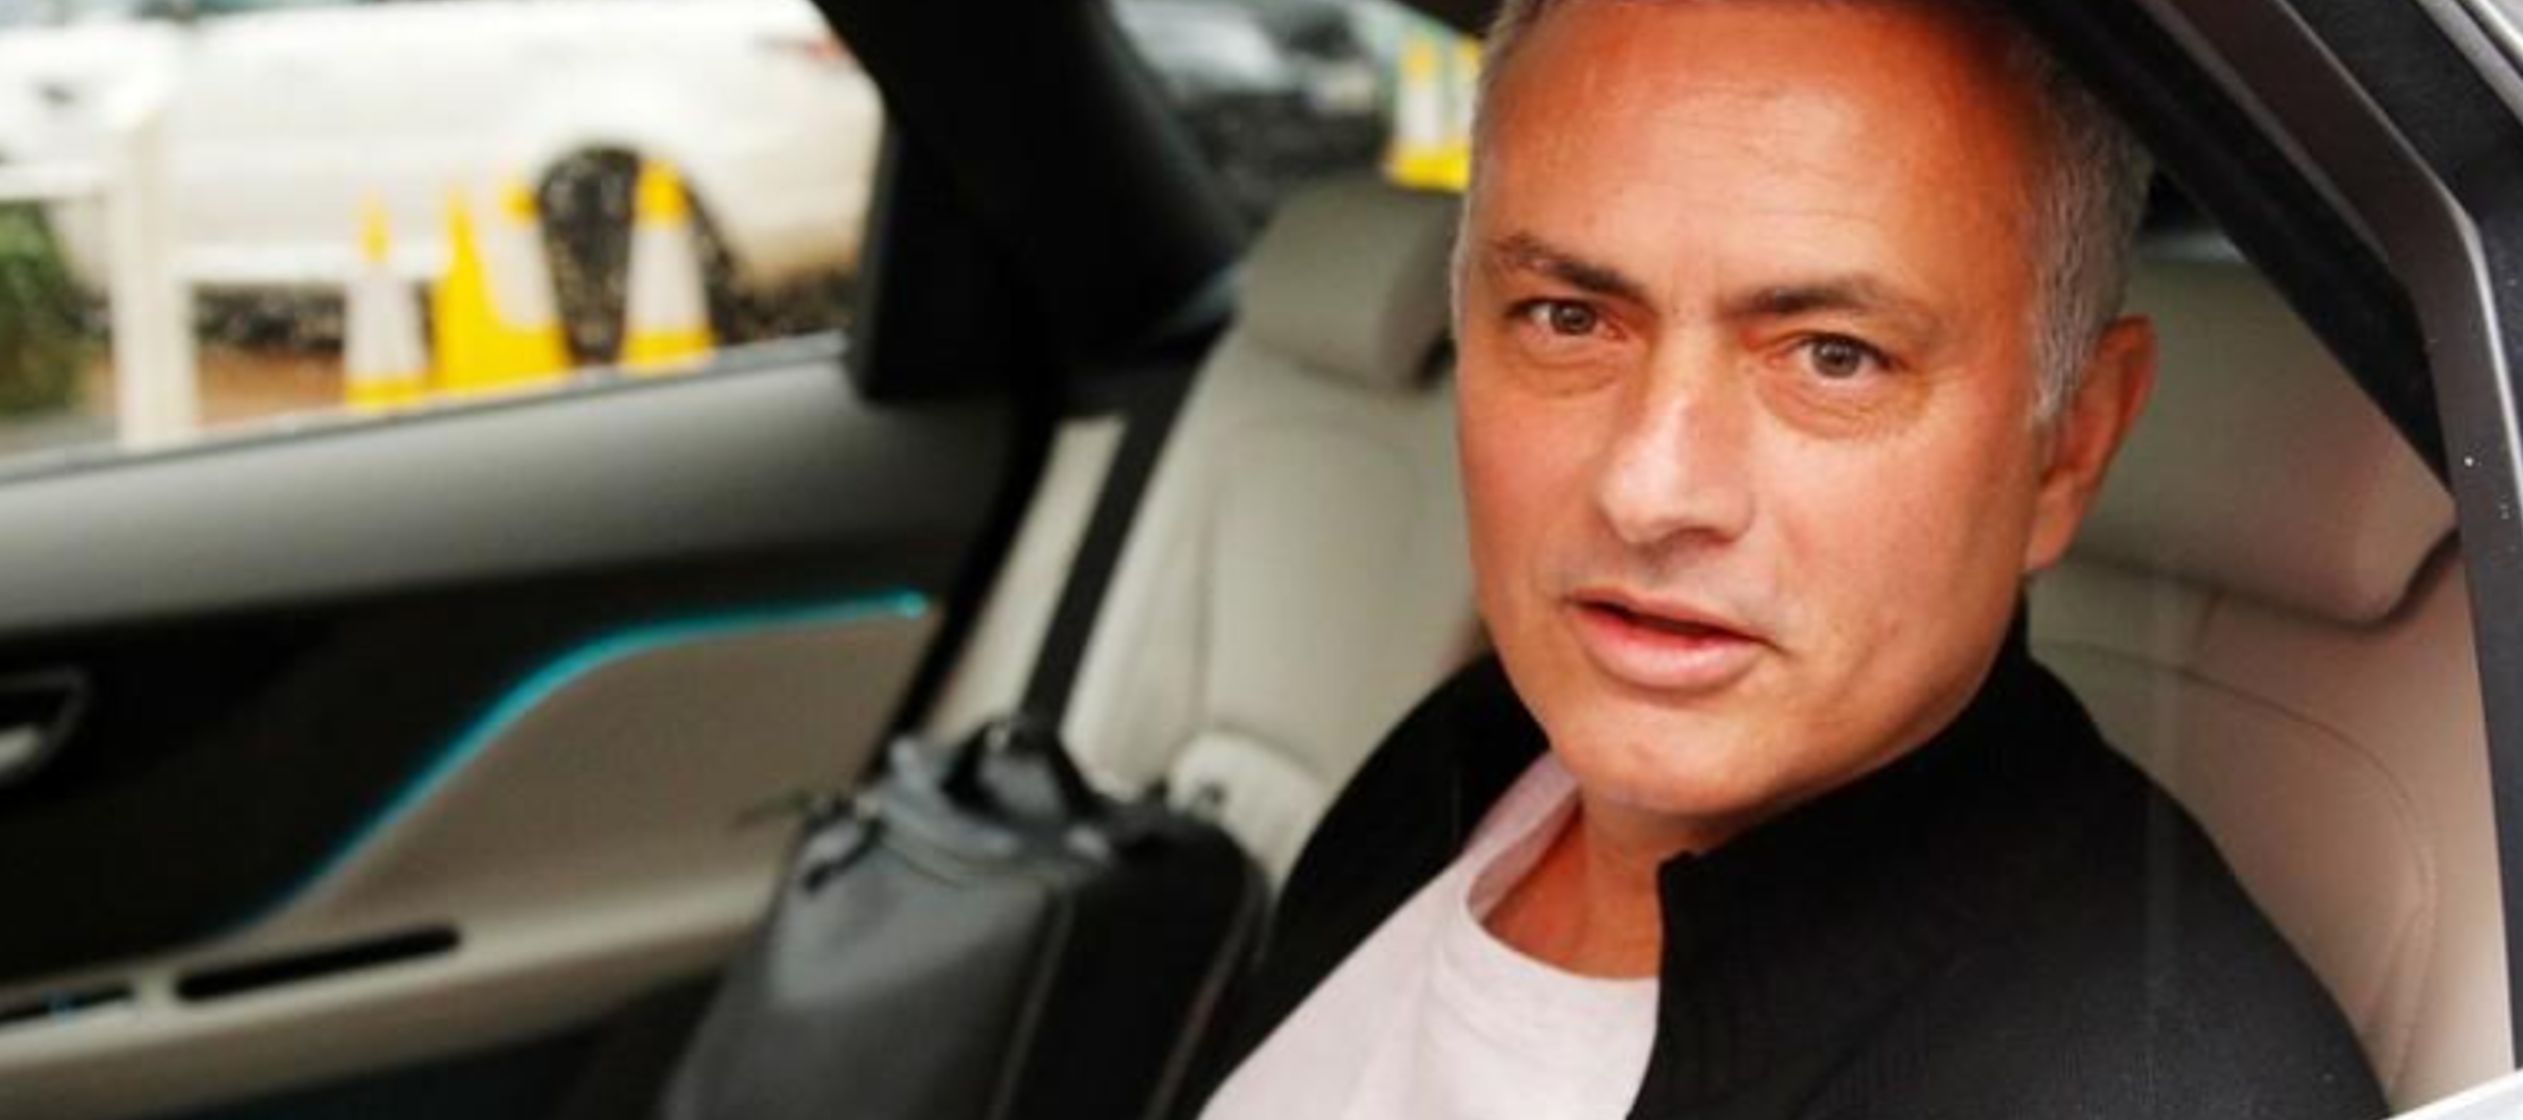 Mourinho fue despedido del United en diciembre tras dos años al frente del club...